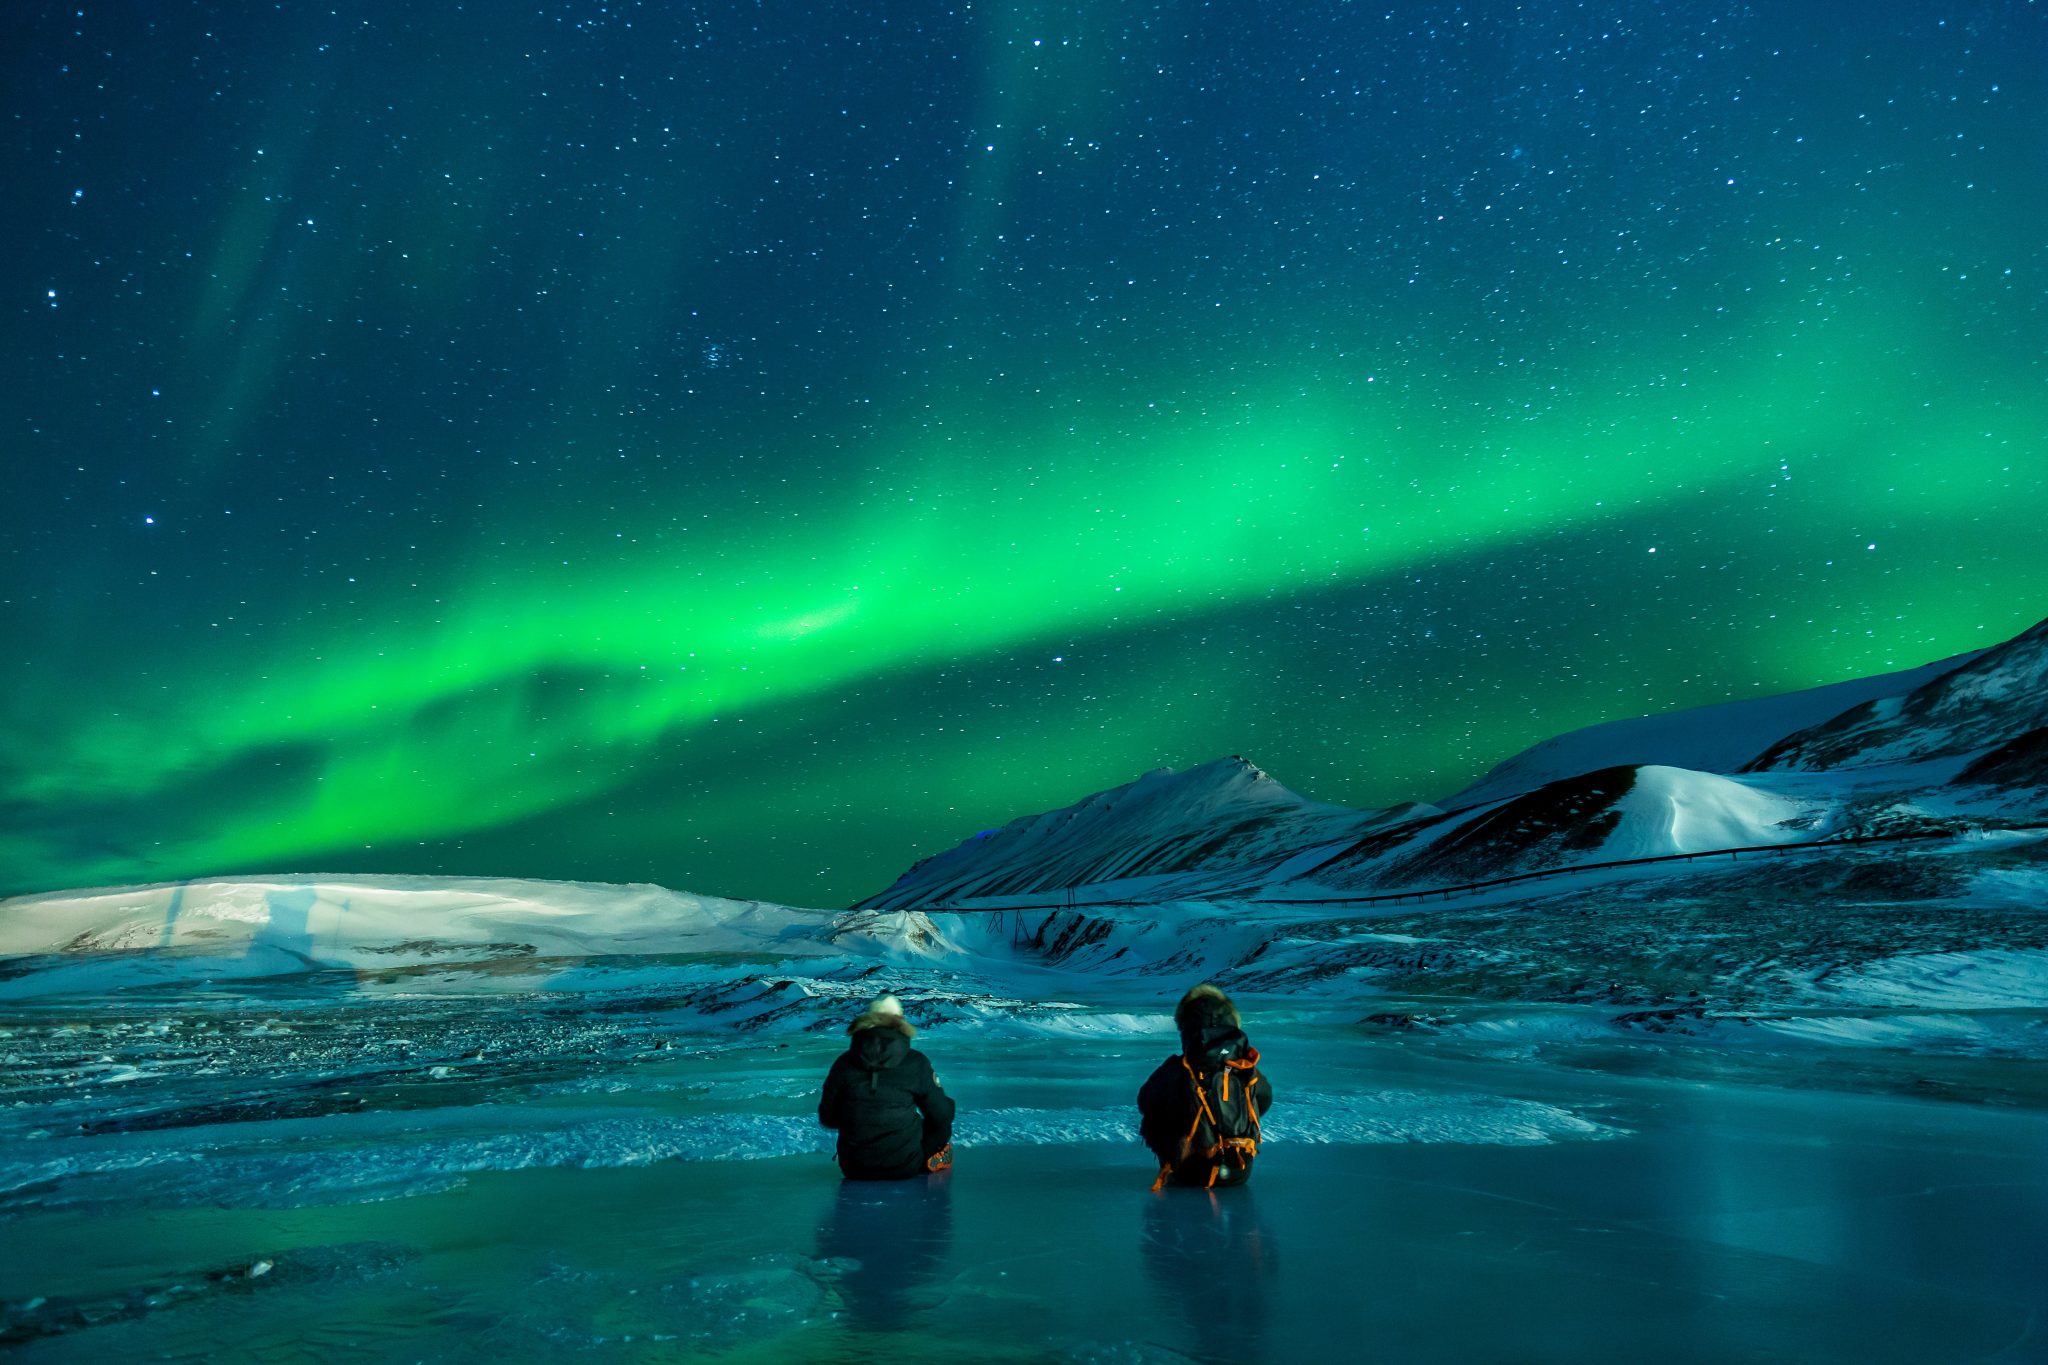 الدراسة في الخارج دراسة الطب في مدينة ترومسو في النرويج حيث تحدث ظاهرة الشفق القطبي